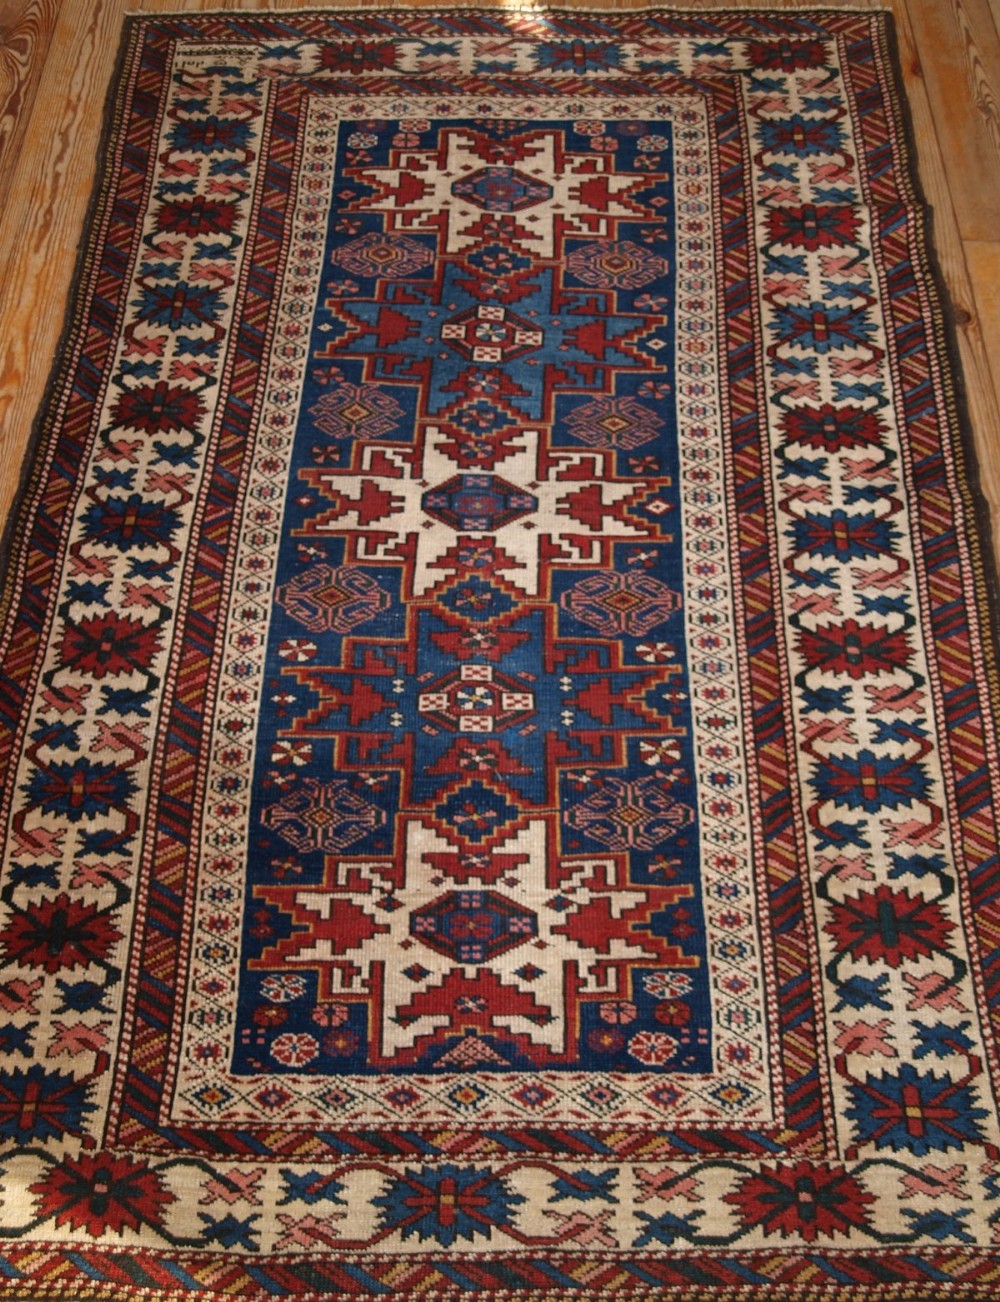 antique caucasian rug with lesghi star design dated 1325 circa 1900